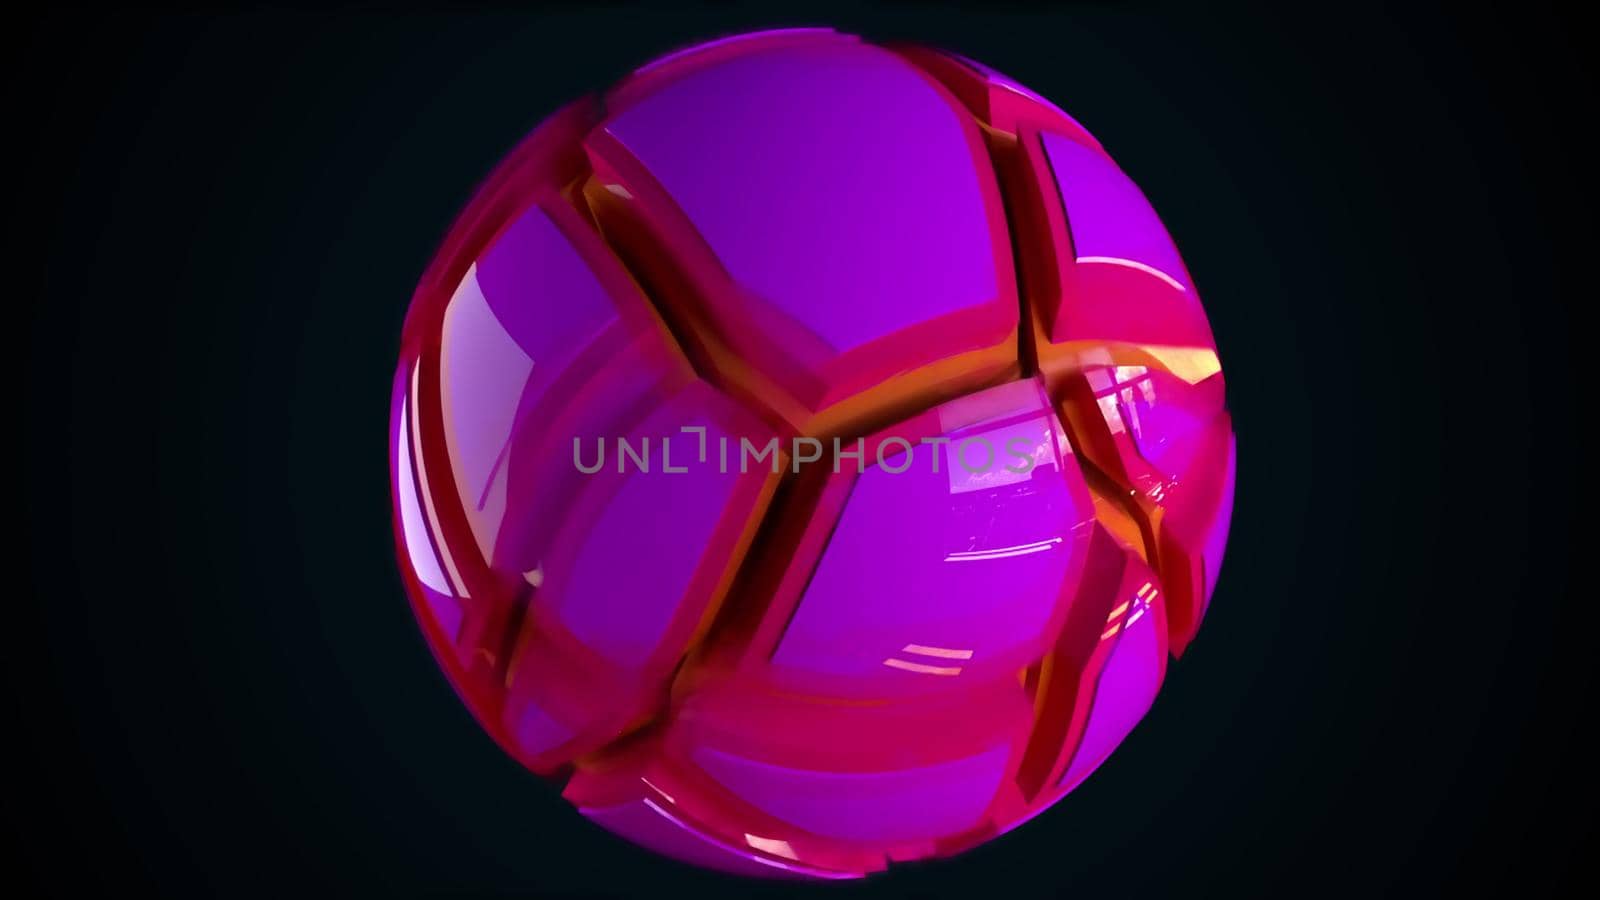 Colorful sphere broken into pieces by nolimit046